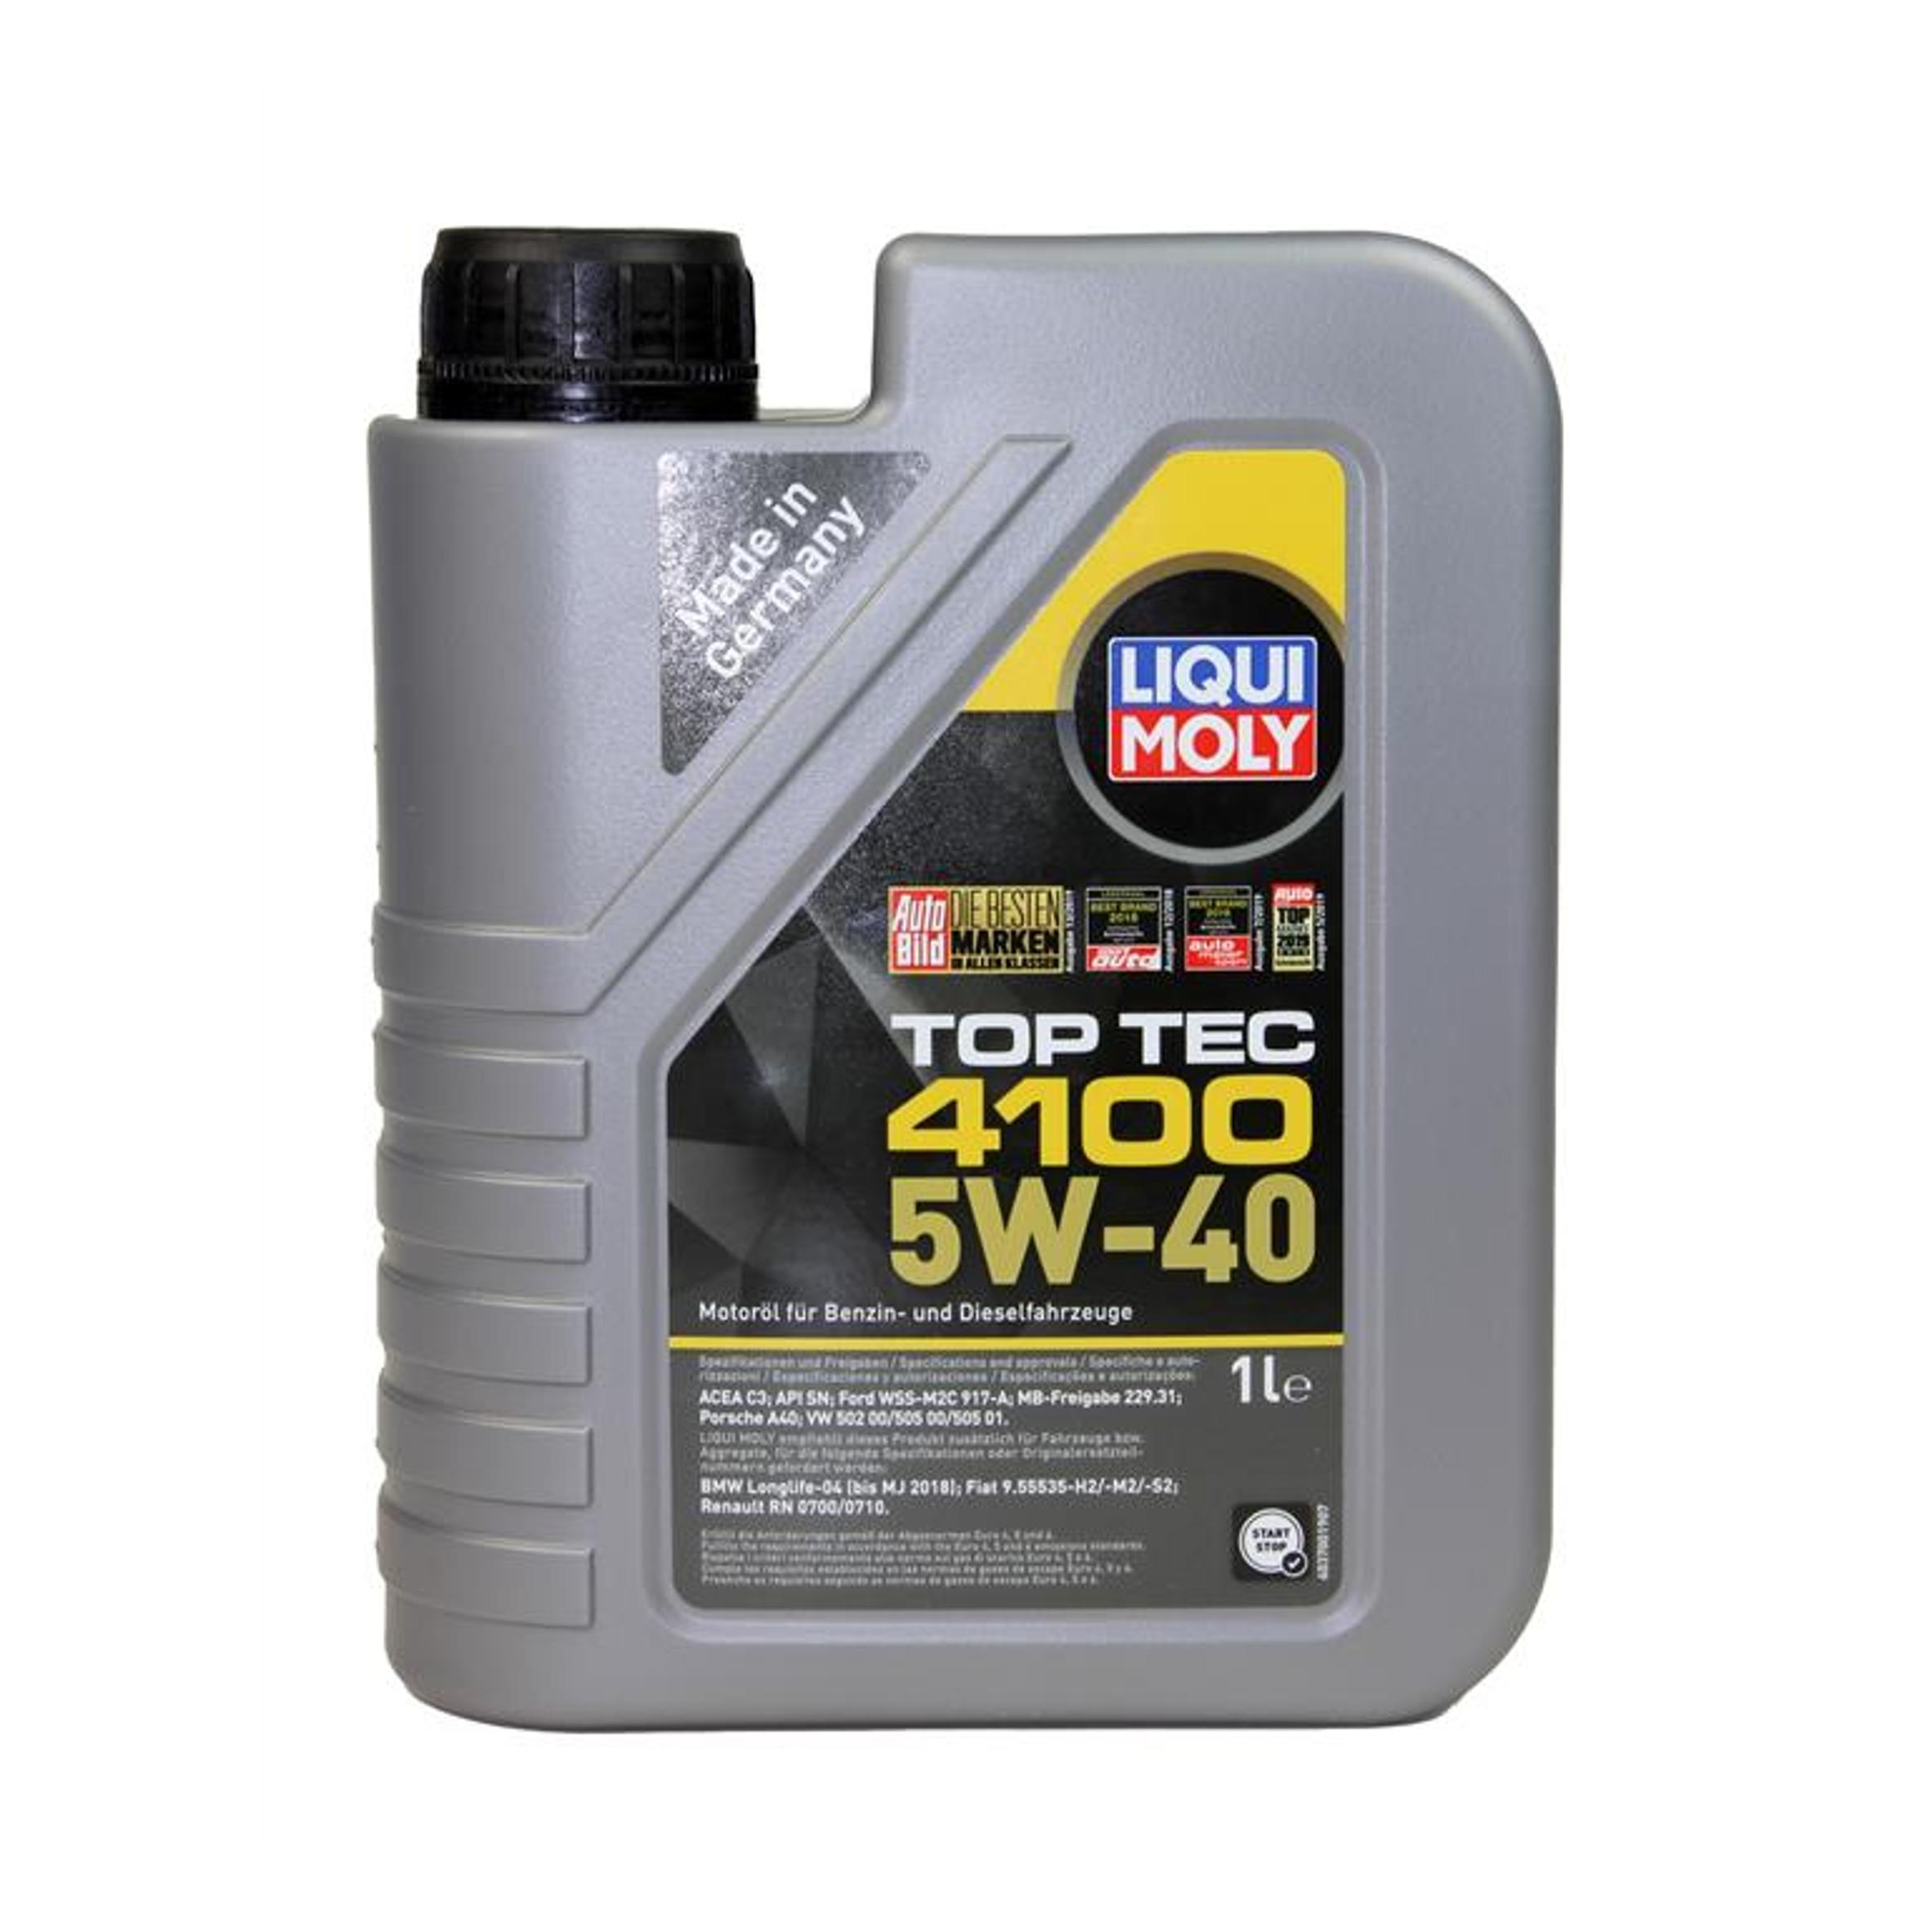 5w-40 Top Tec 4100, 1л (НС-синт.мотор.масло) - Liqui Moly 9510